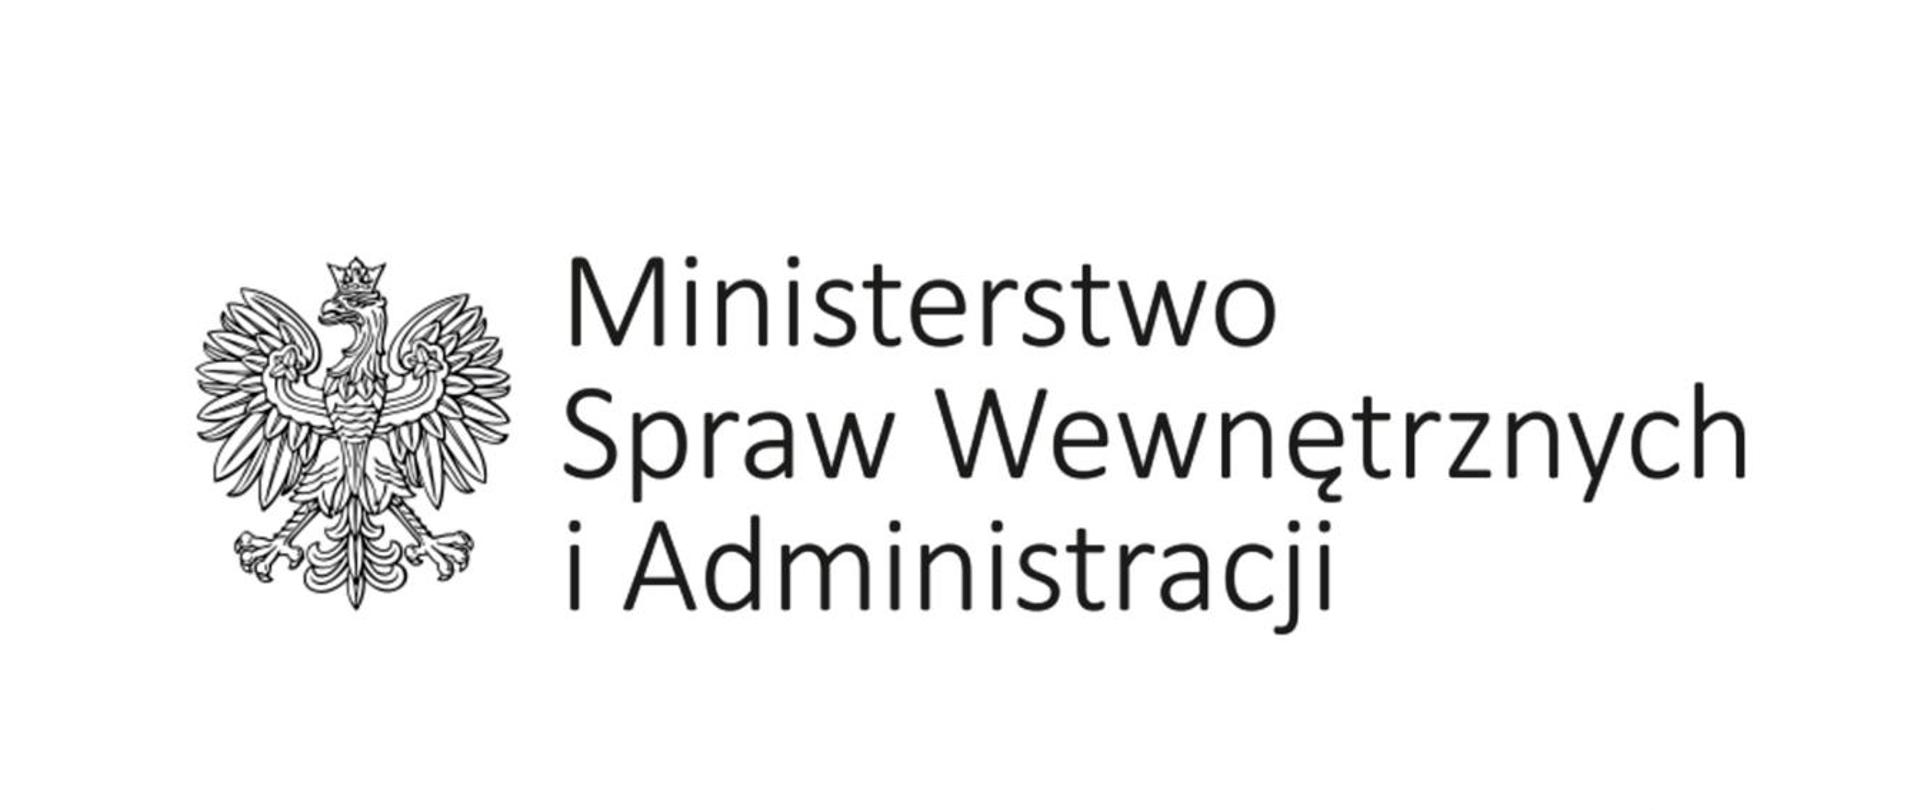 Ilustracja przedstawia na białym tle, na środku czarno-biały logotyp Ministerstwa Spraw Wewnętrznych, który składa się z czarno-białego orła oraz napisu Ministerstwo Spraw Wewnętrznych i Administracji. W prawym dolnym rogu napis KW PSP Katowice